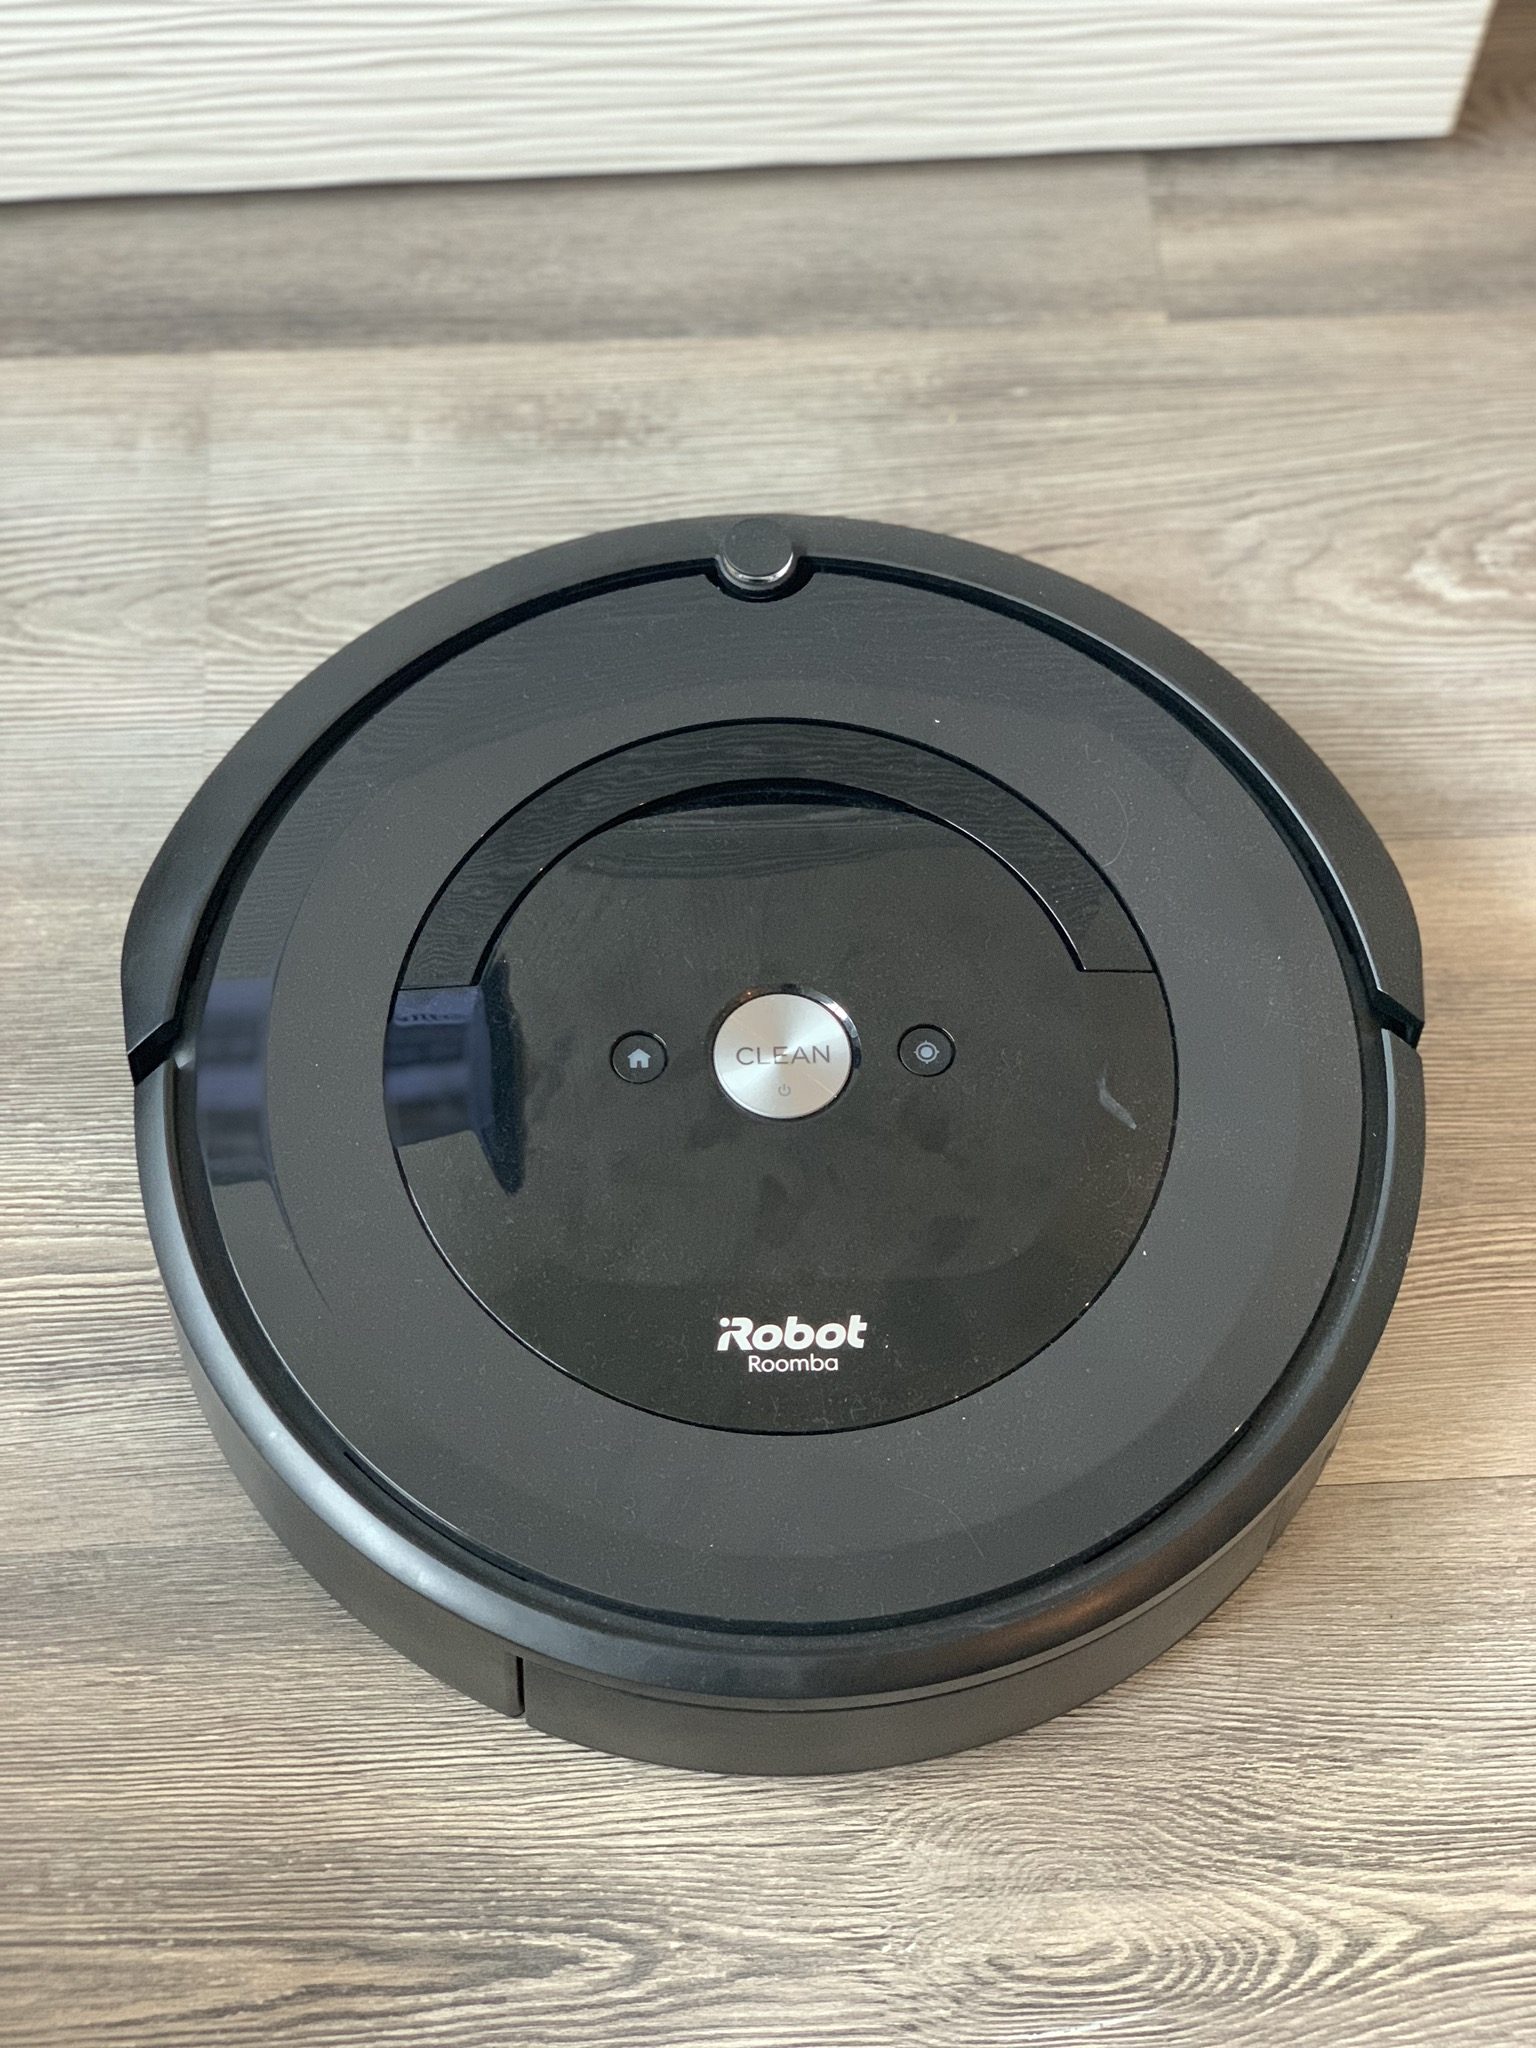 Mon avis sur le Roomba d’Irobot